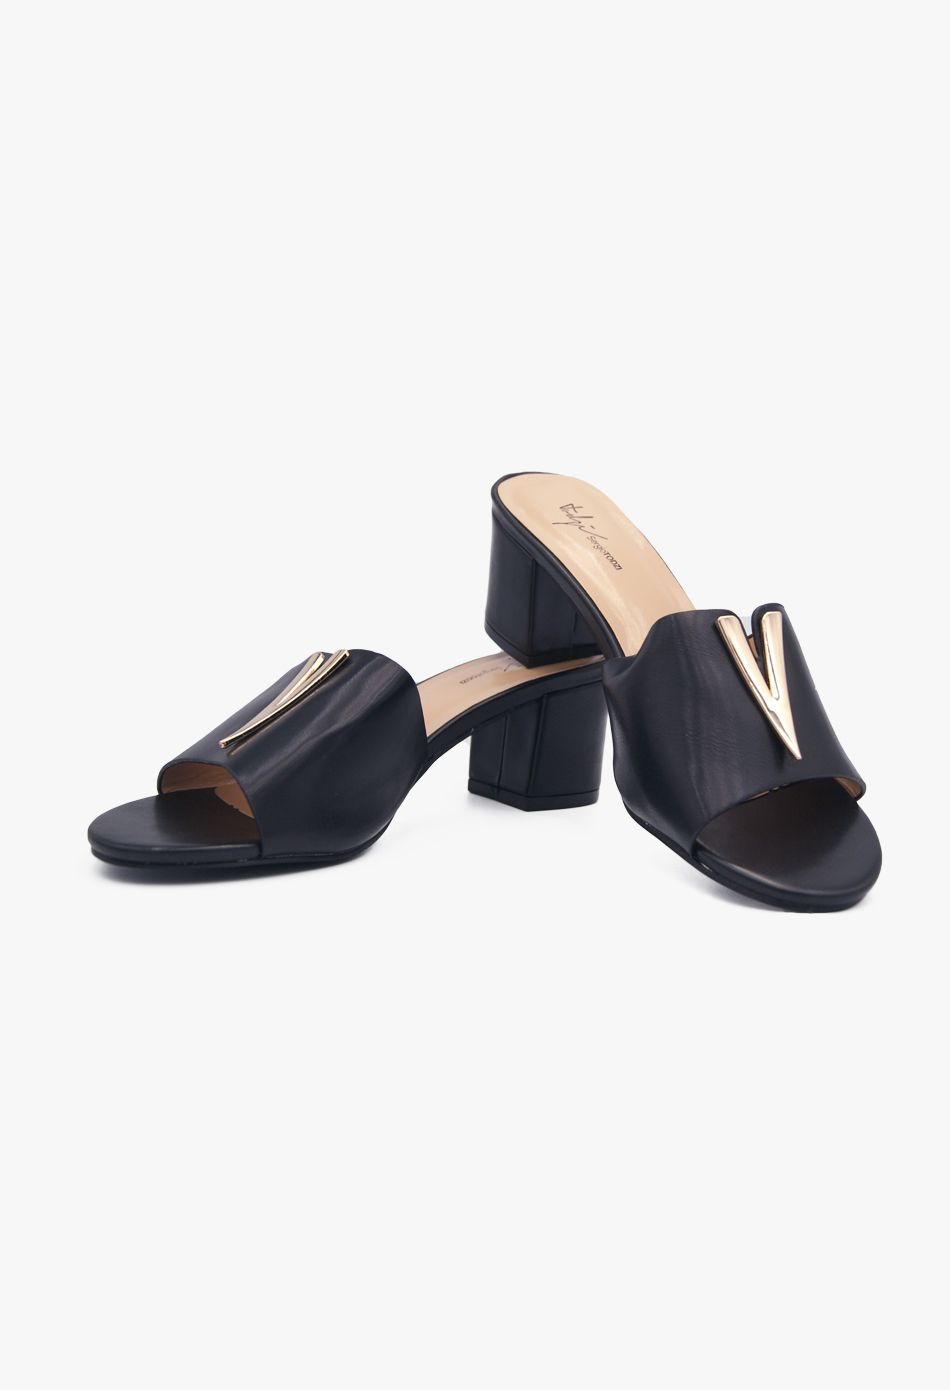 Mules με Χοντρό Χαμηλό Τακούνι Μαύρο / 655A2-black Ανοιχτά Παπούτσια joya.gr